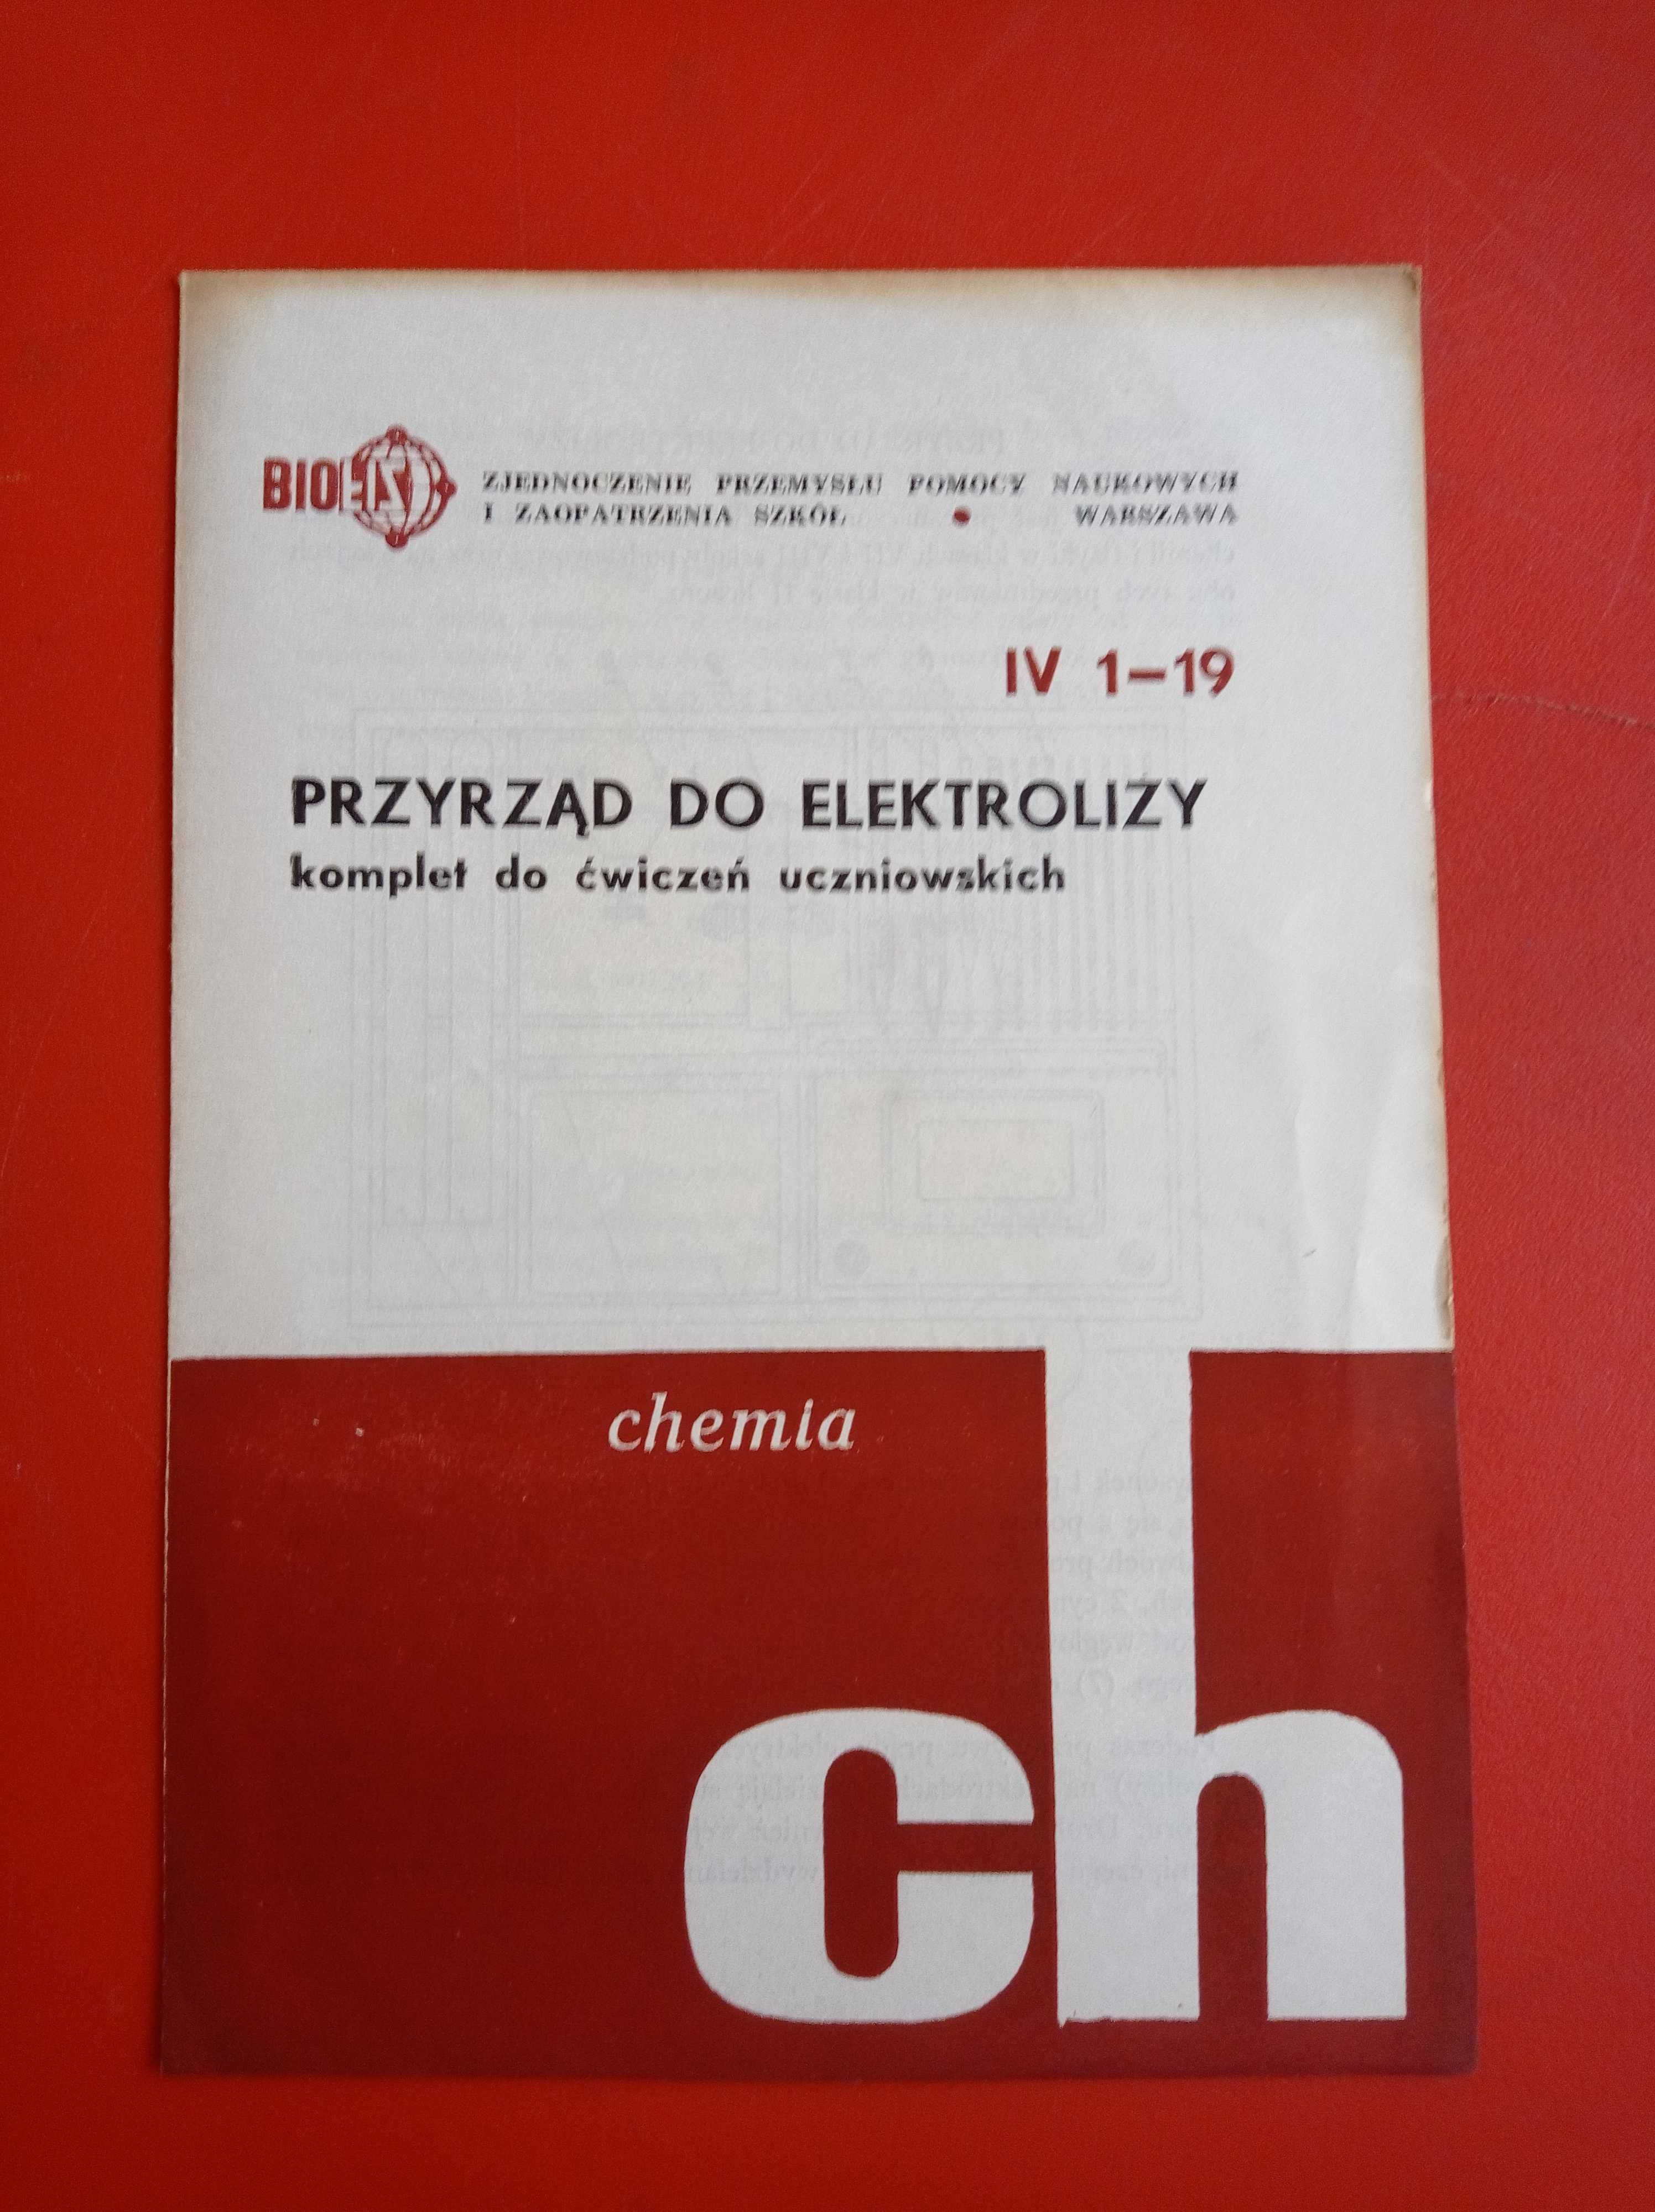 BIOFIZ, Przyrząd do elektrolizy, chemia, IV 1-19